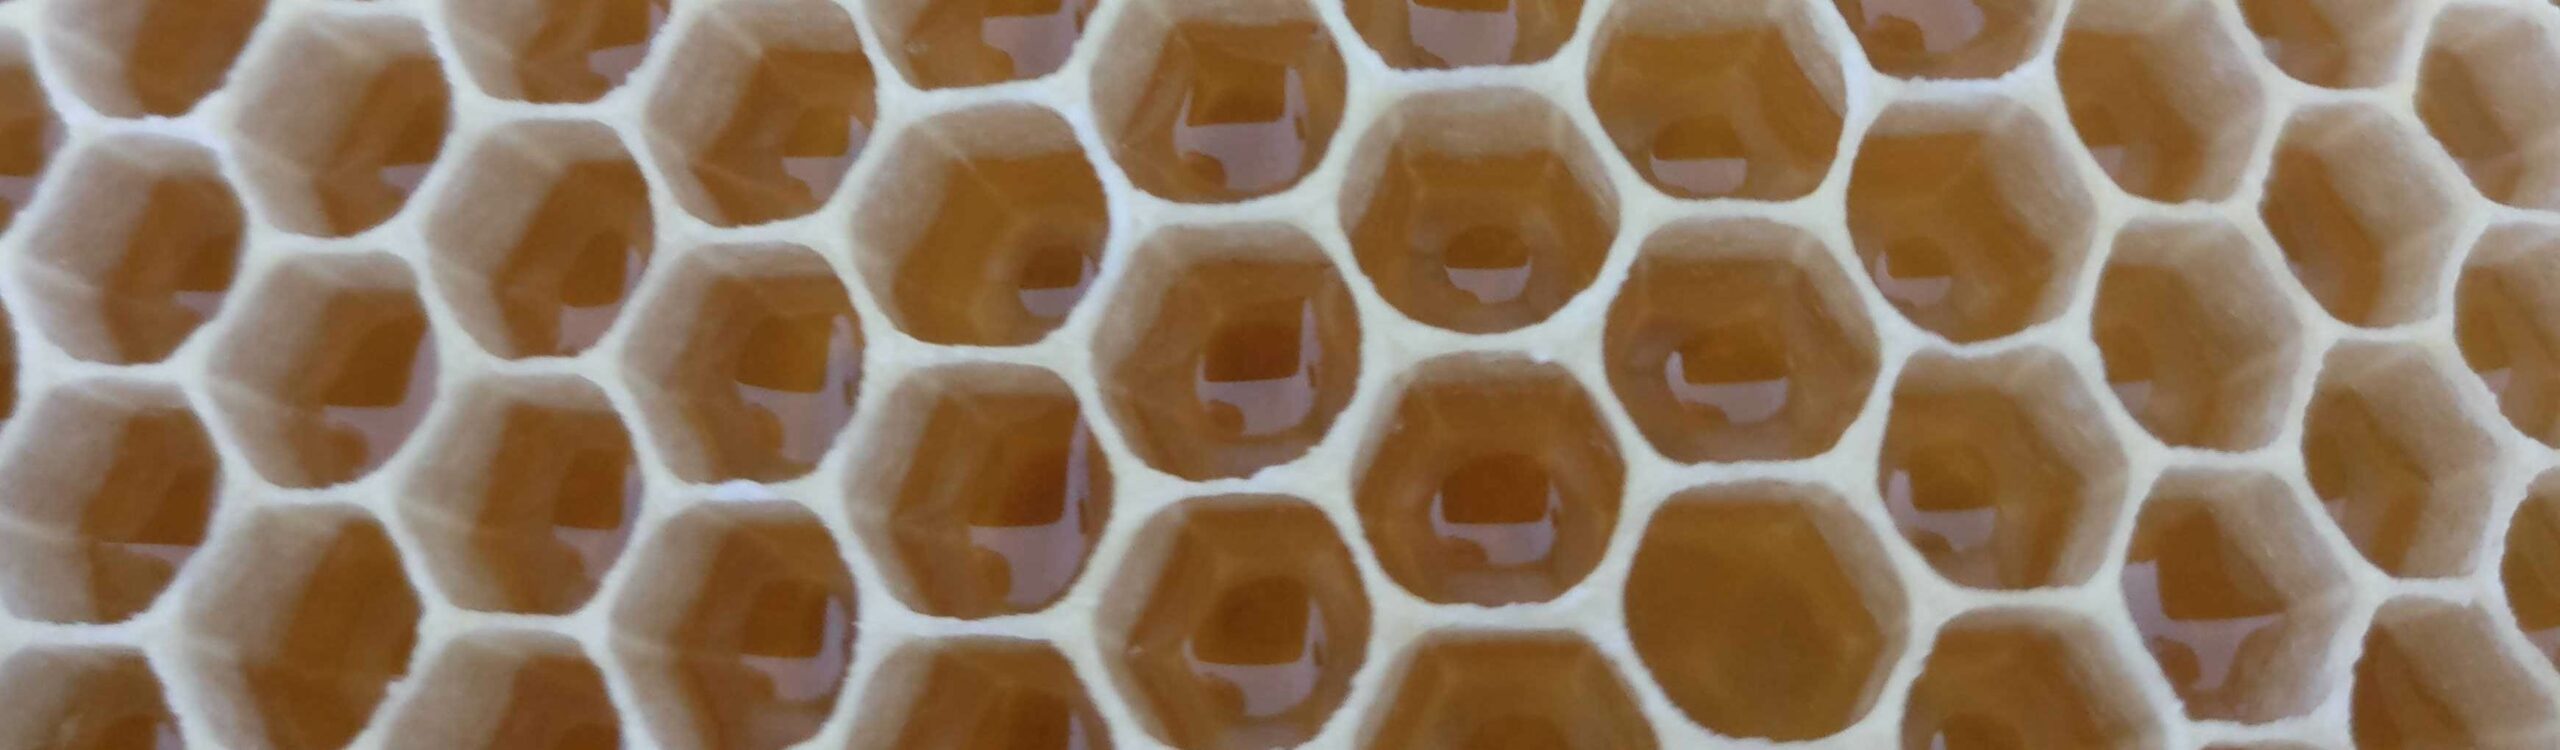 Honig – sein Weg bis ins Glas